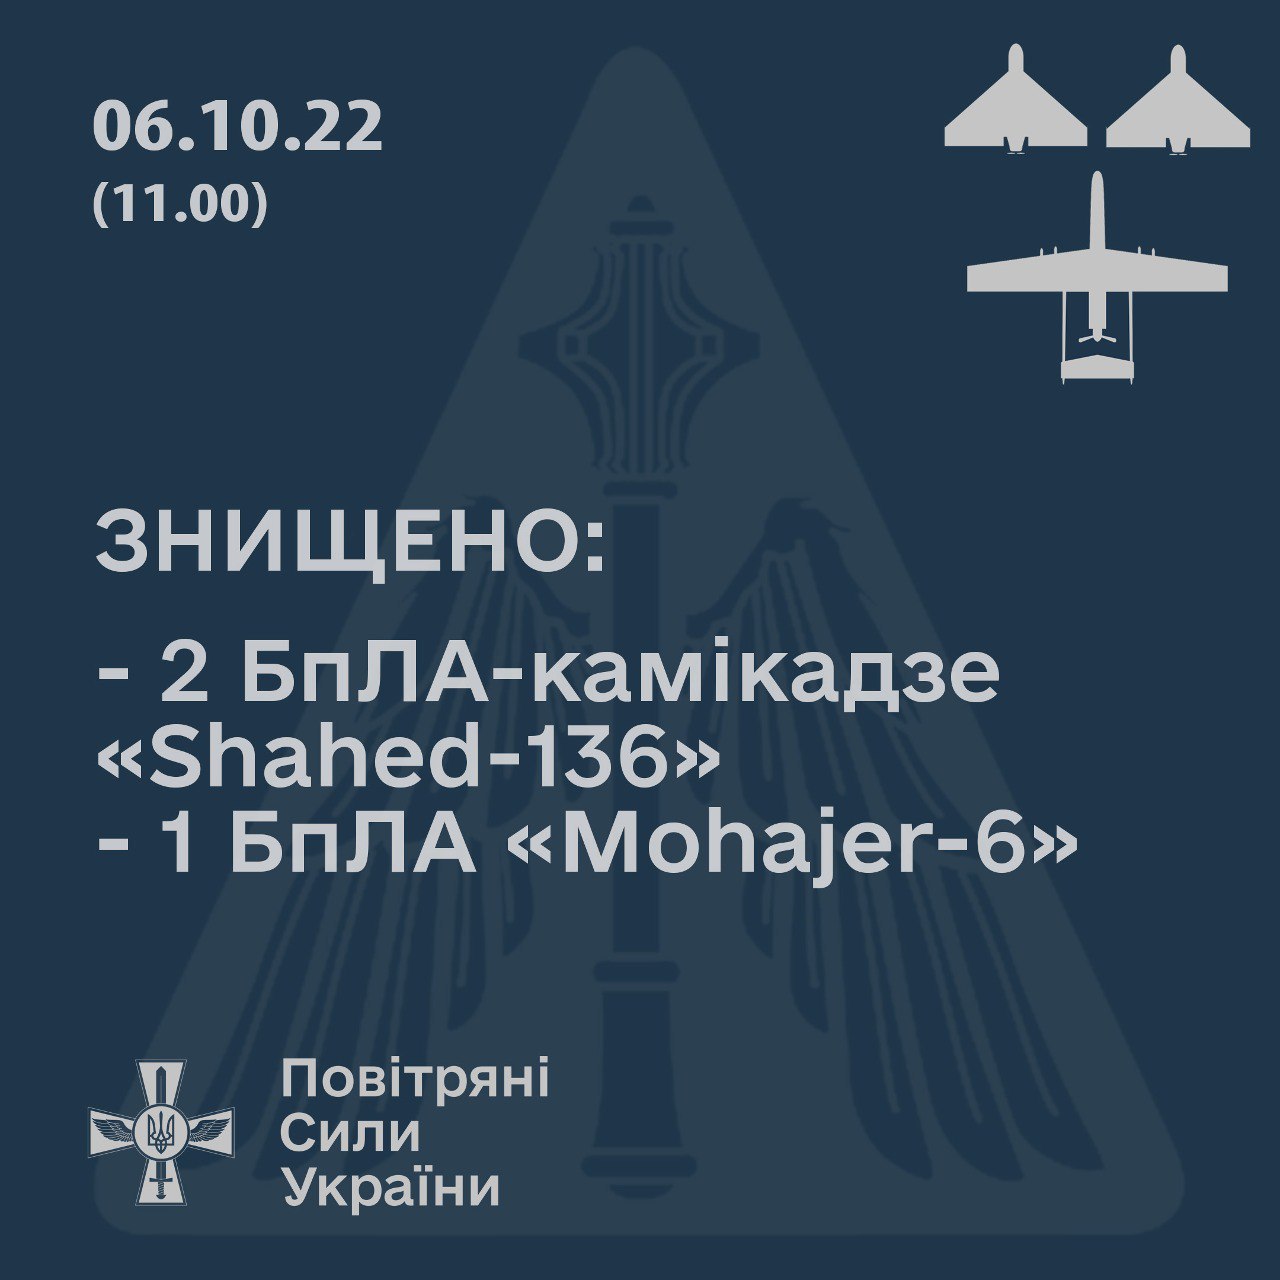 Телеграм-канал Воздушных сил ВСУ сообщает о том, что два дрона-камикадзе Shahed-136 и один ударный беспилотник Mohajer-6 сбиты сегодня утром в небе над Николаевской областью